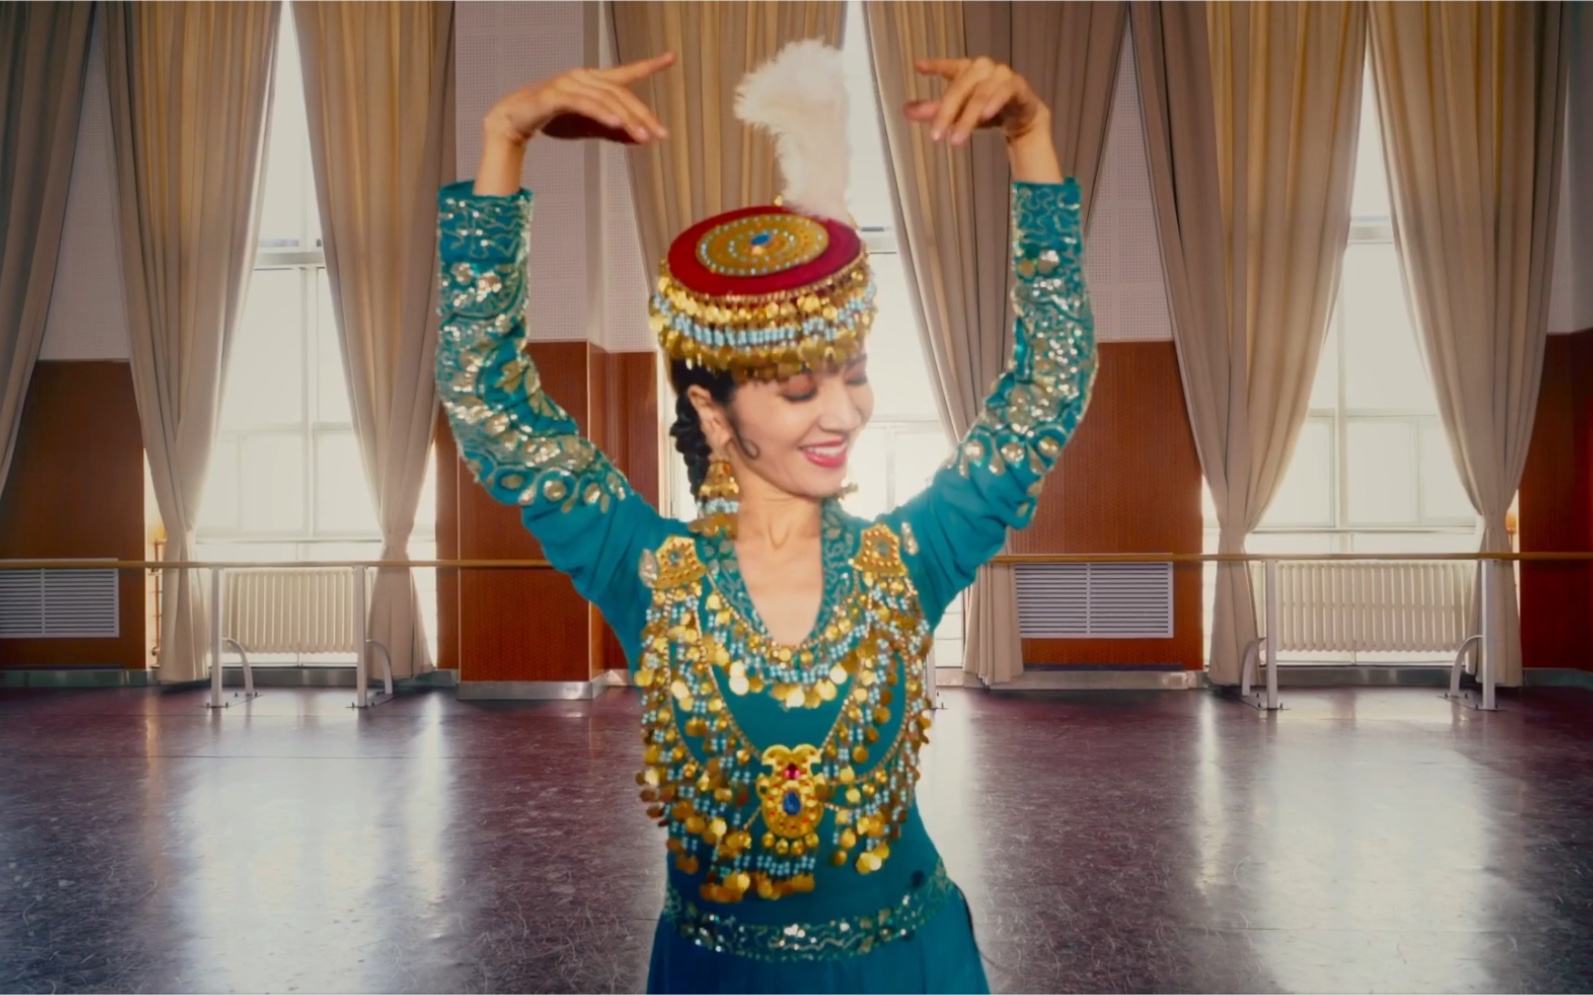 乌兹别克族女孩图片